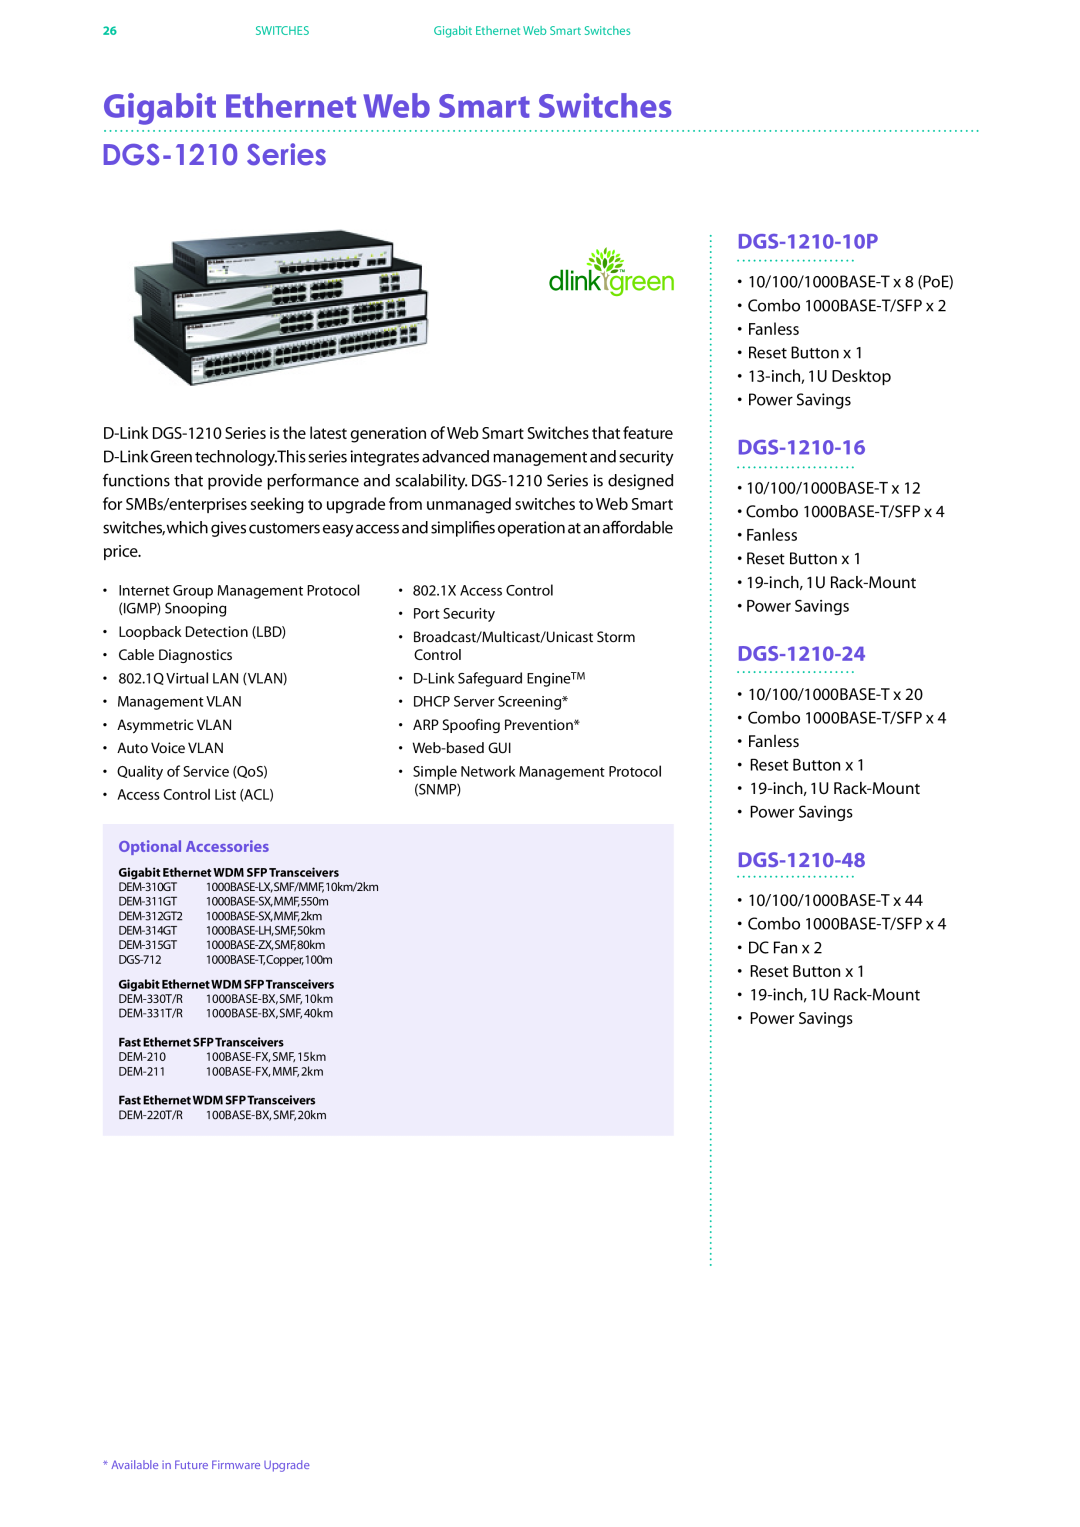 D-Link DES-7200 Gigabit Ethernet Web Smart Switches, DGS-1210 Series, DGS-1210-10P, DGS-1210-16, DGS-1210-24, DGS-1210-48 